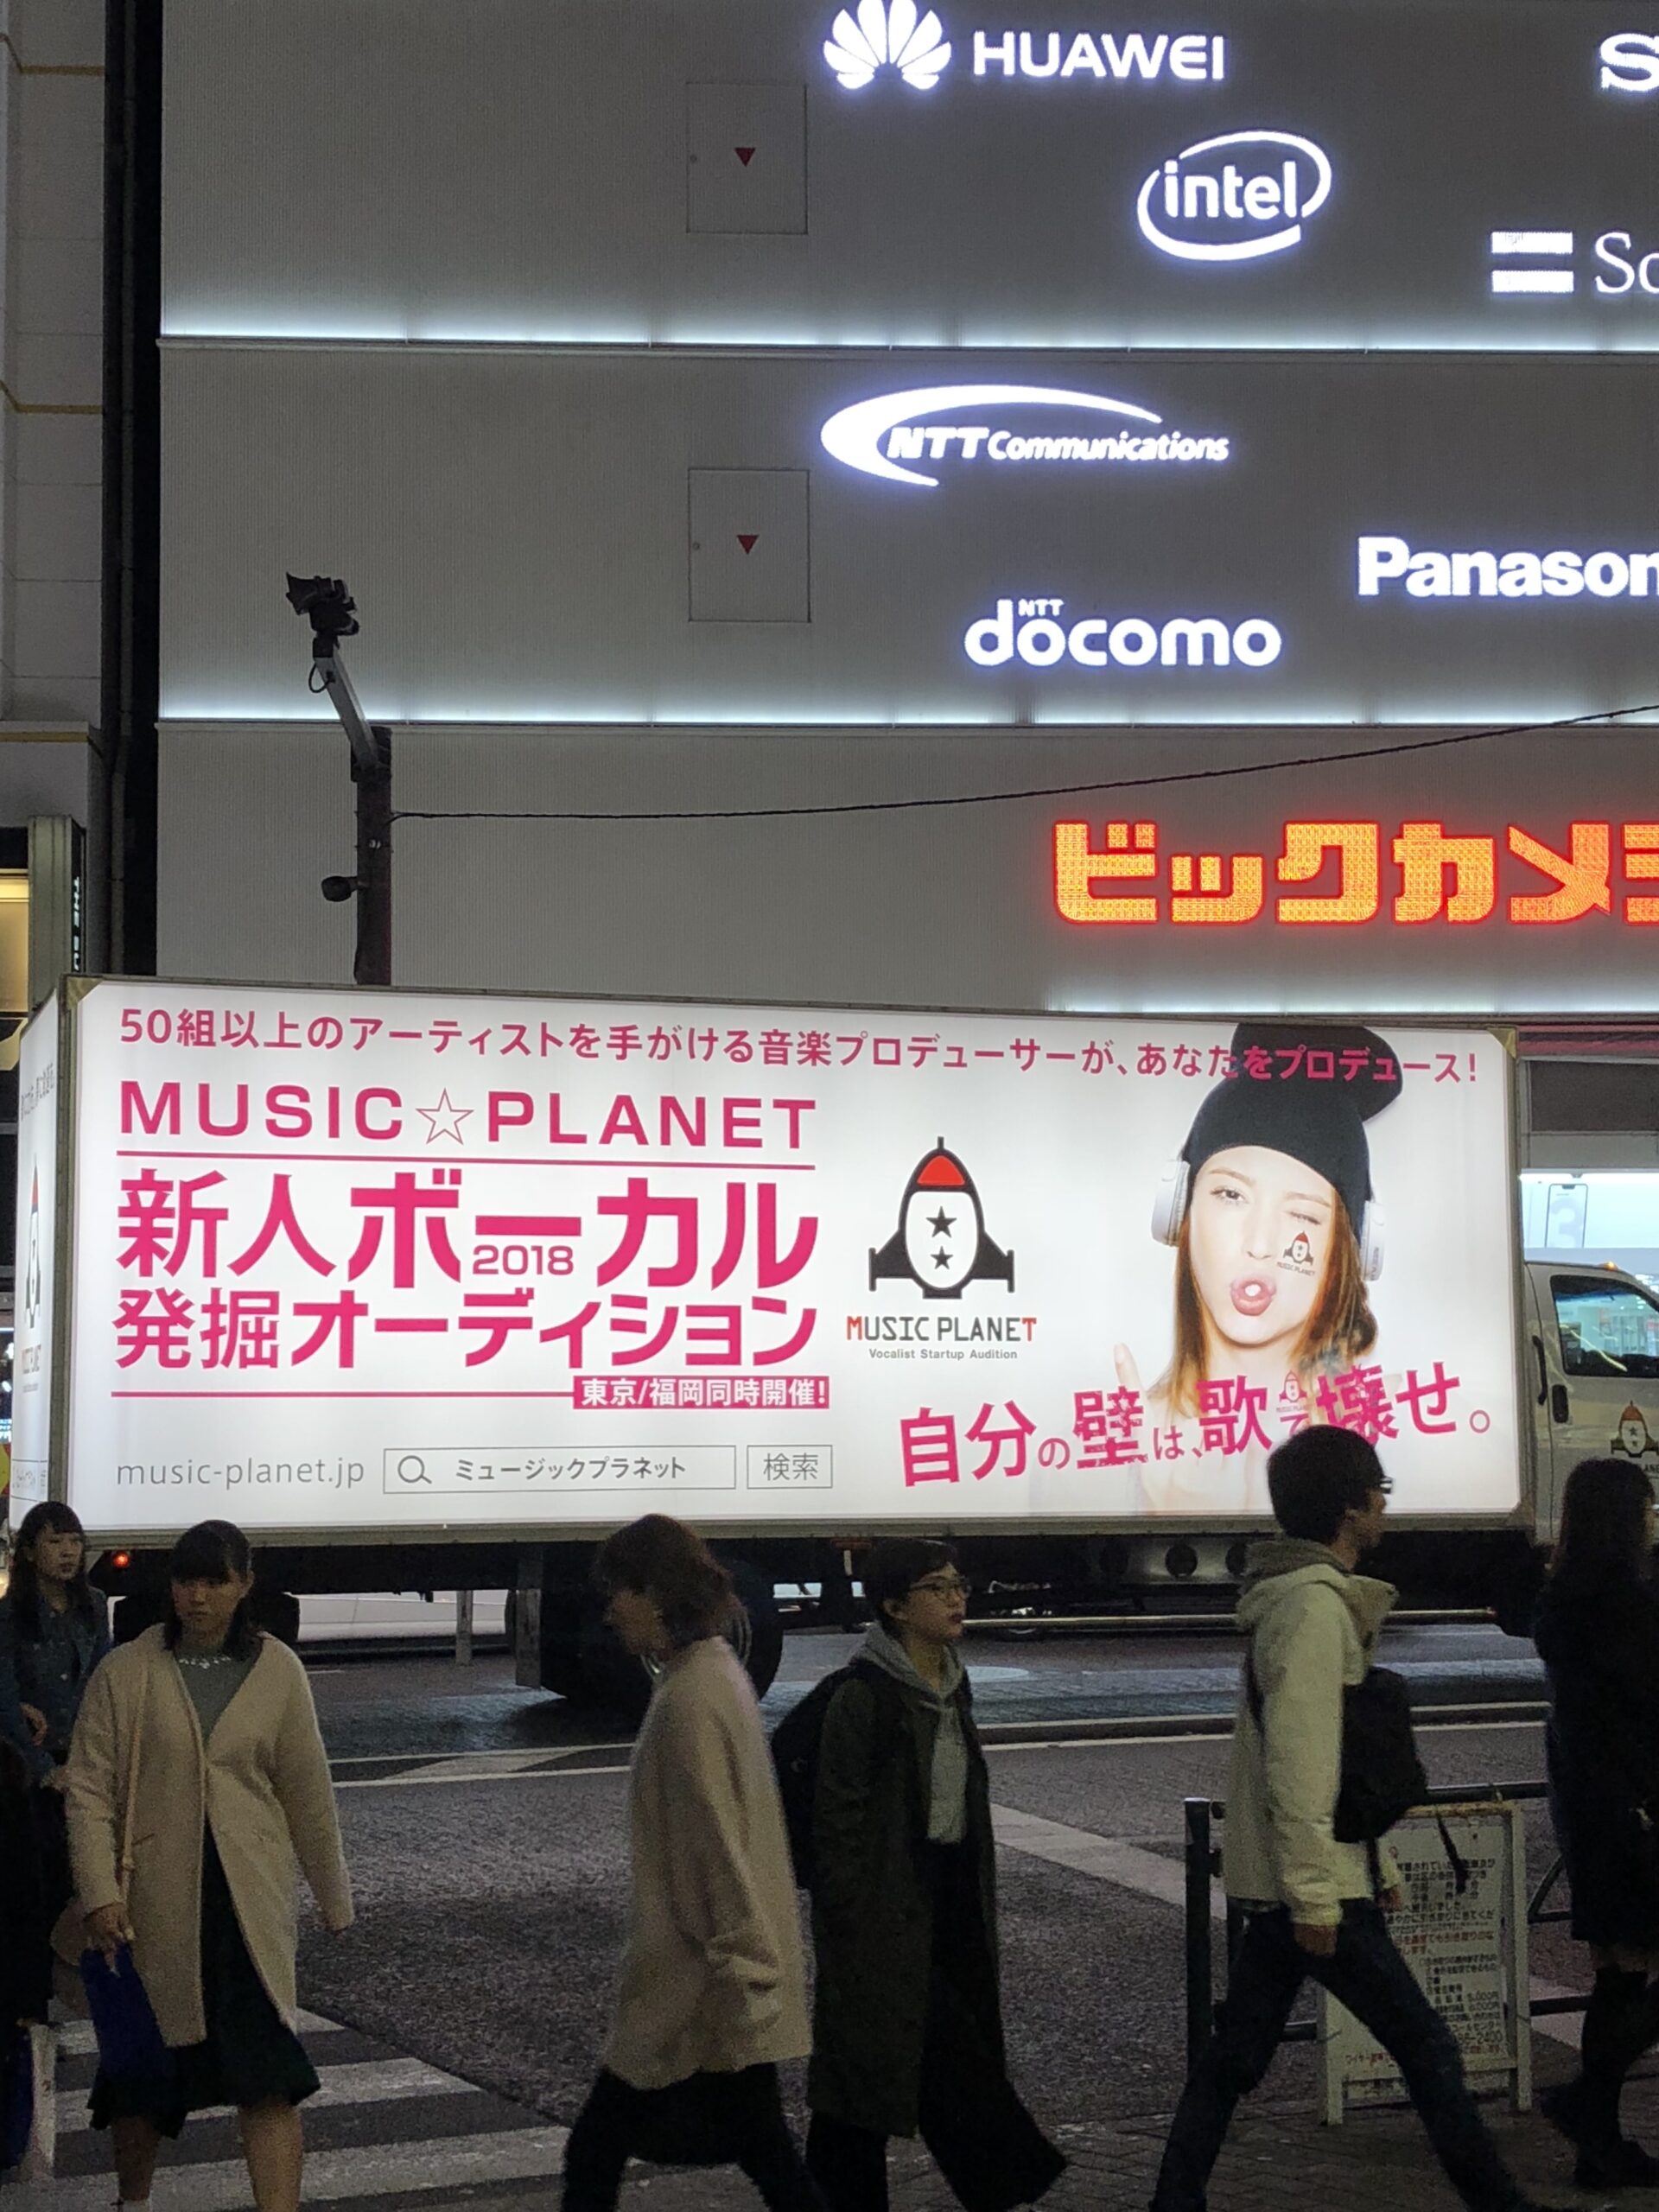 ミュージックプラネットMusicPlanetの宣伝バス